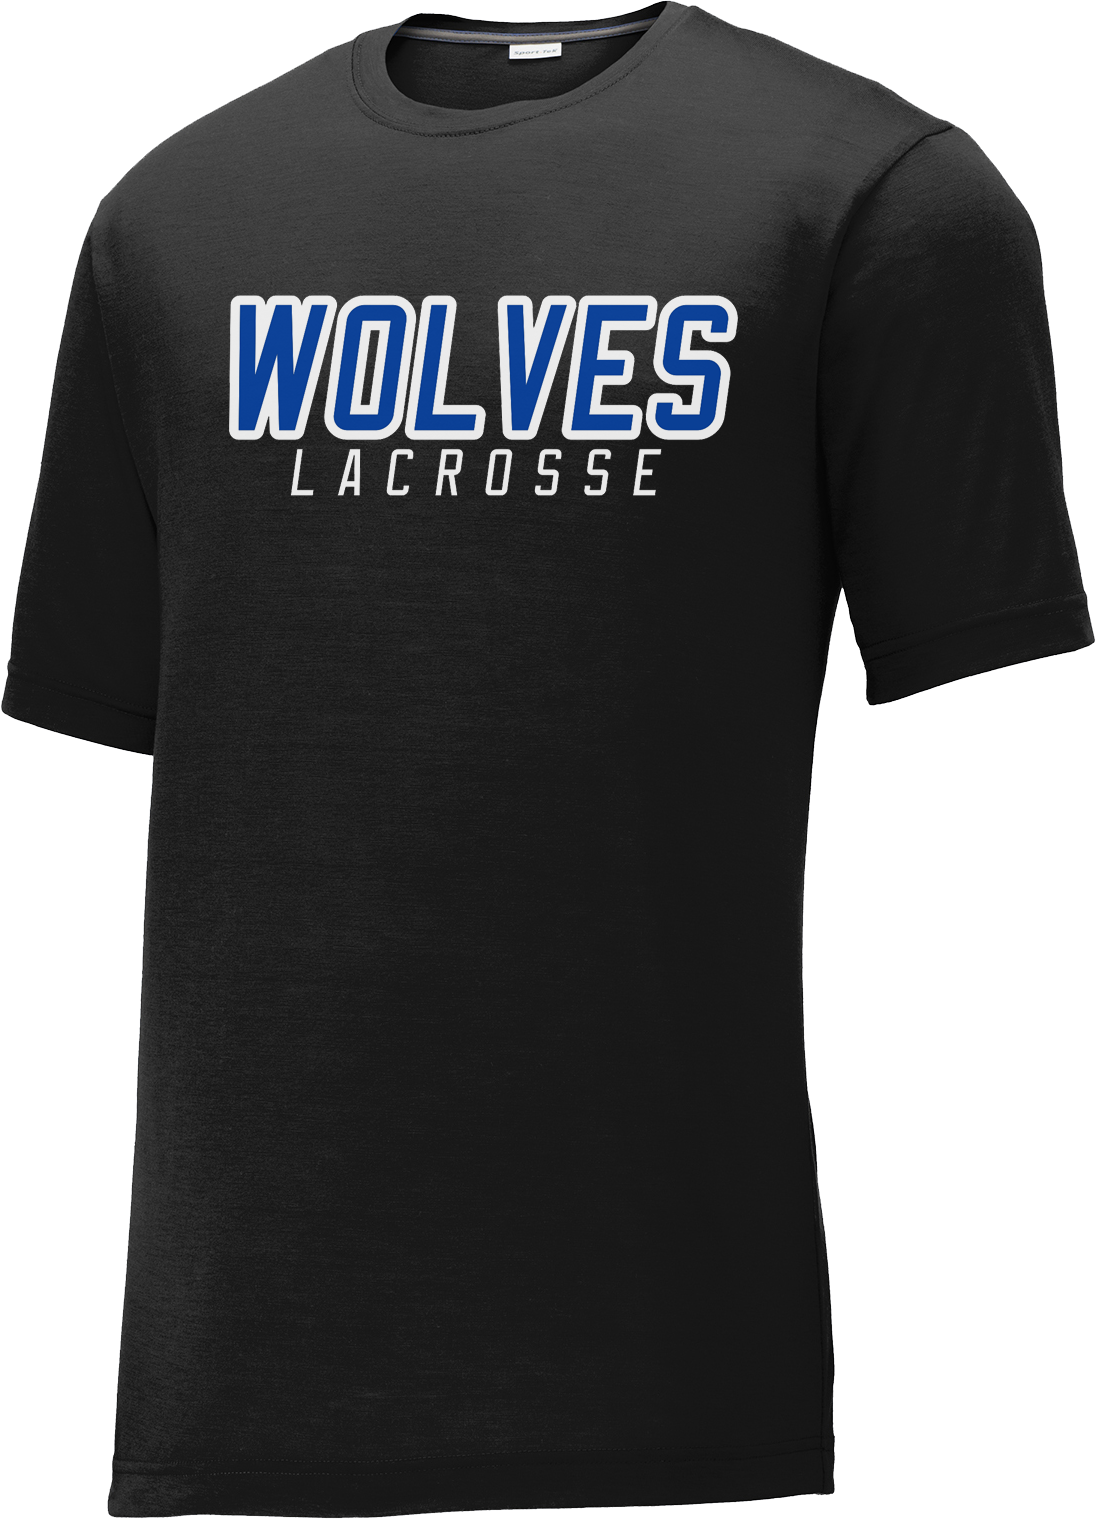 West Houston Wolves Black CottonTouch Performance T-Shirt